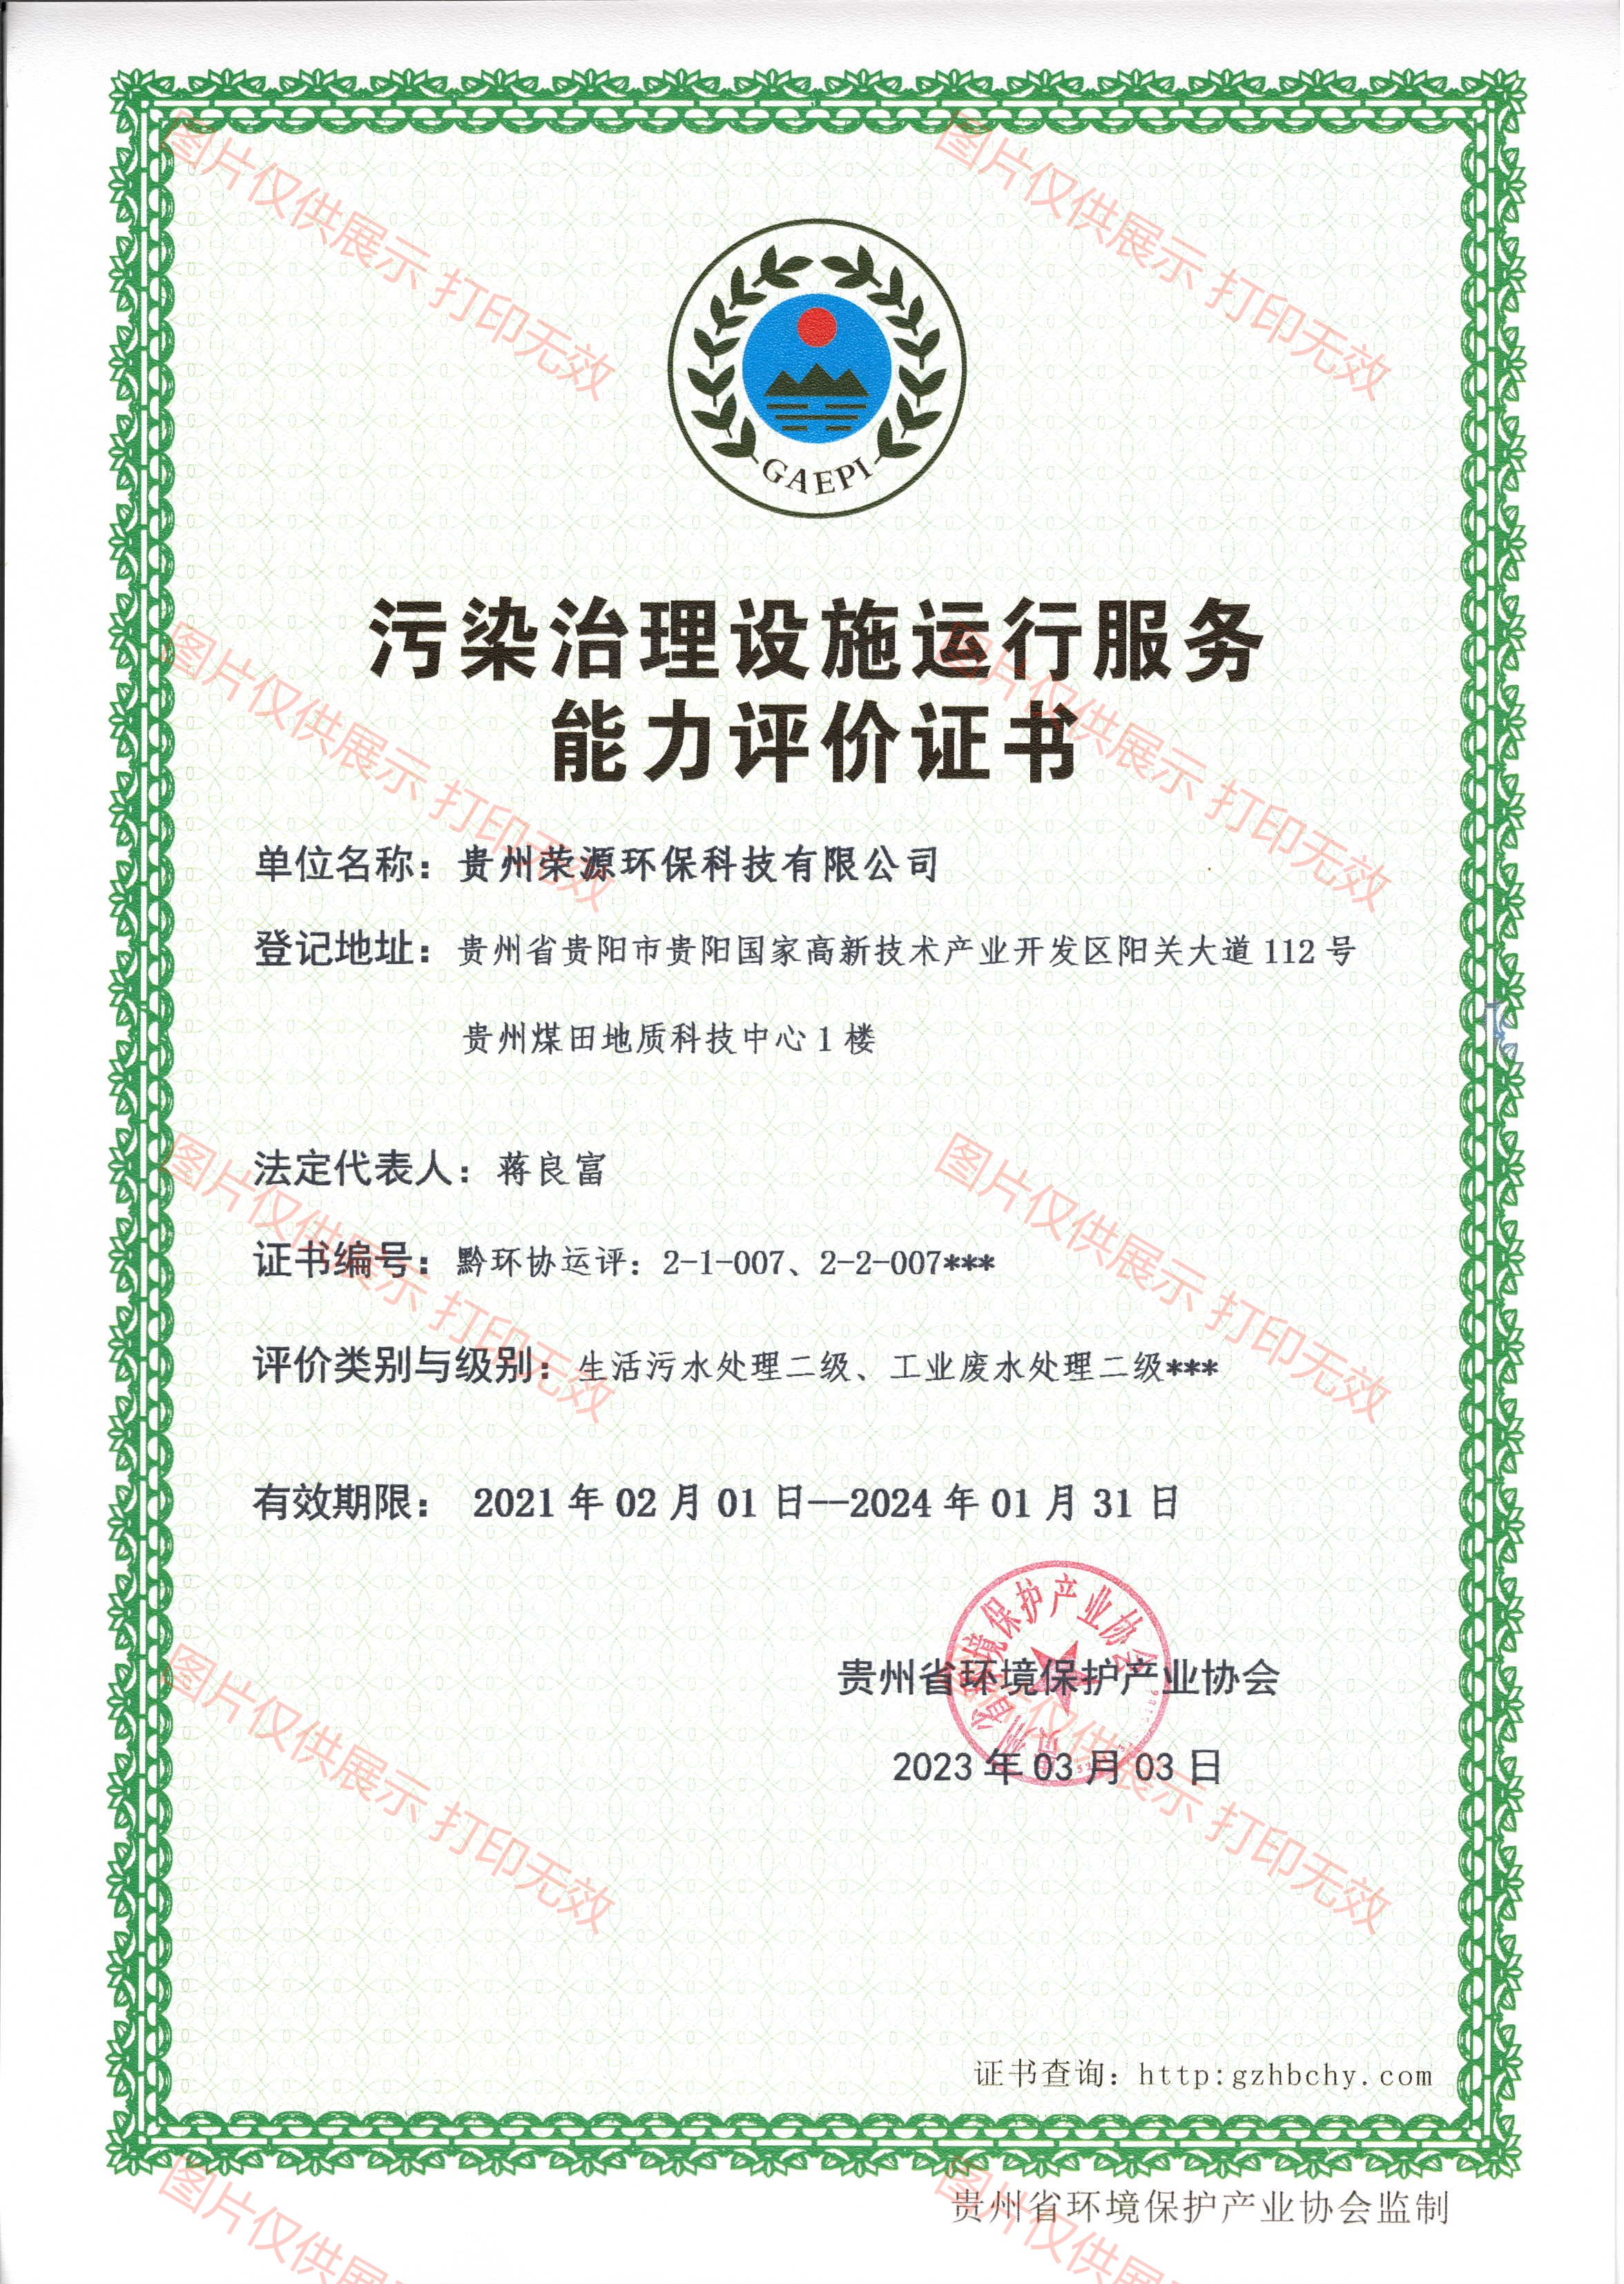 污染治理設施運行服務能力評價證書(shū)